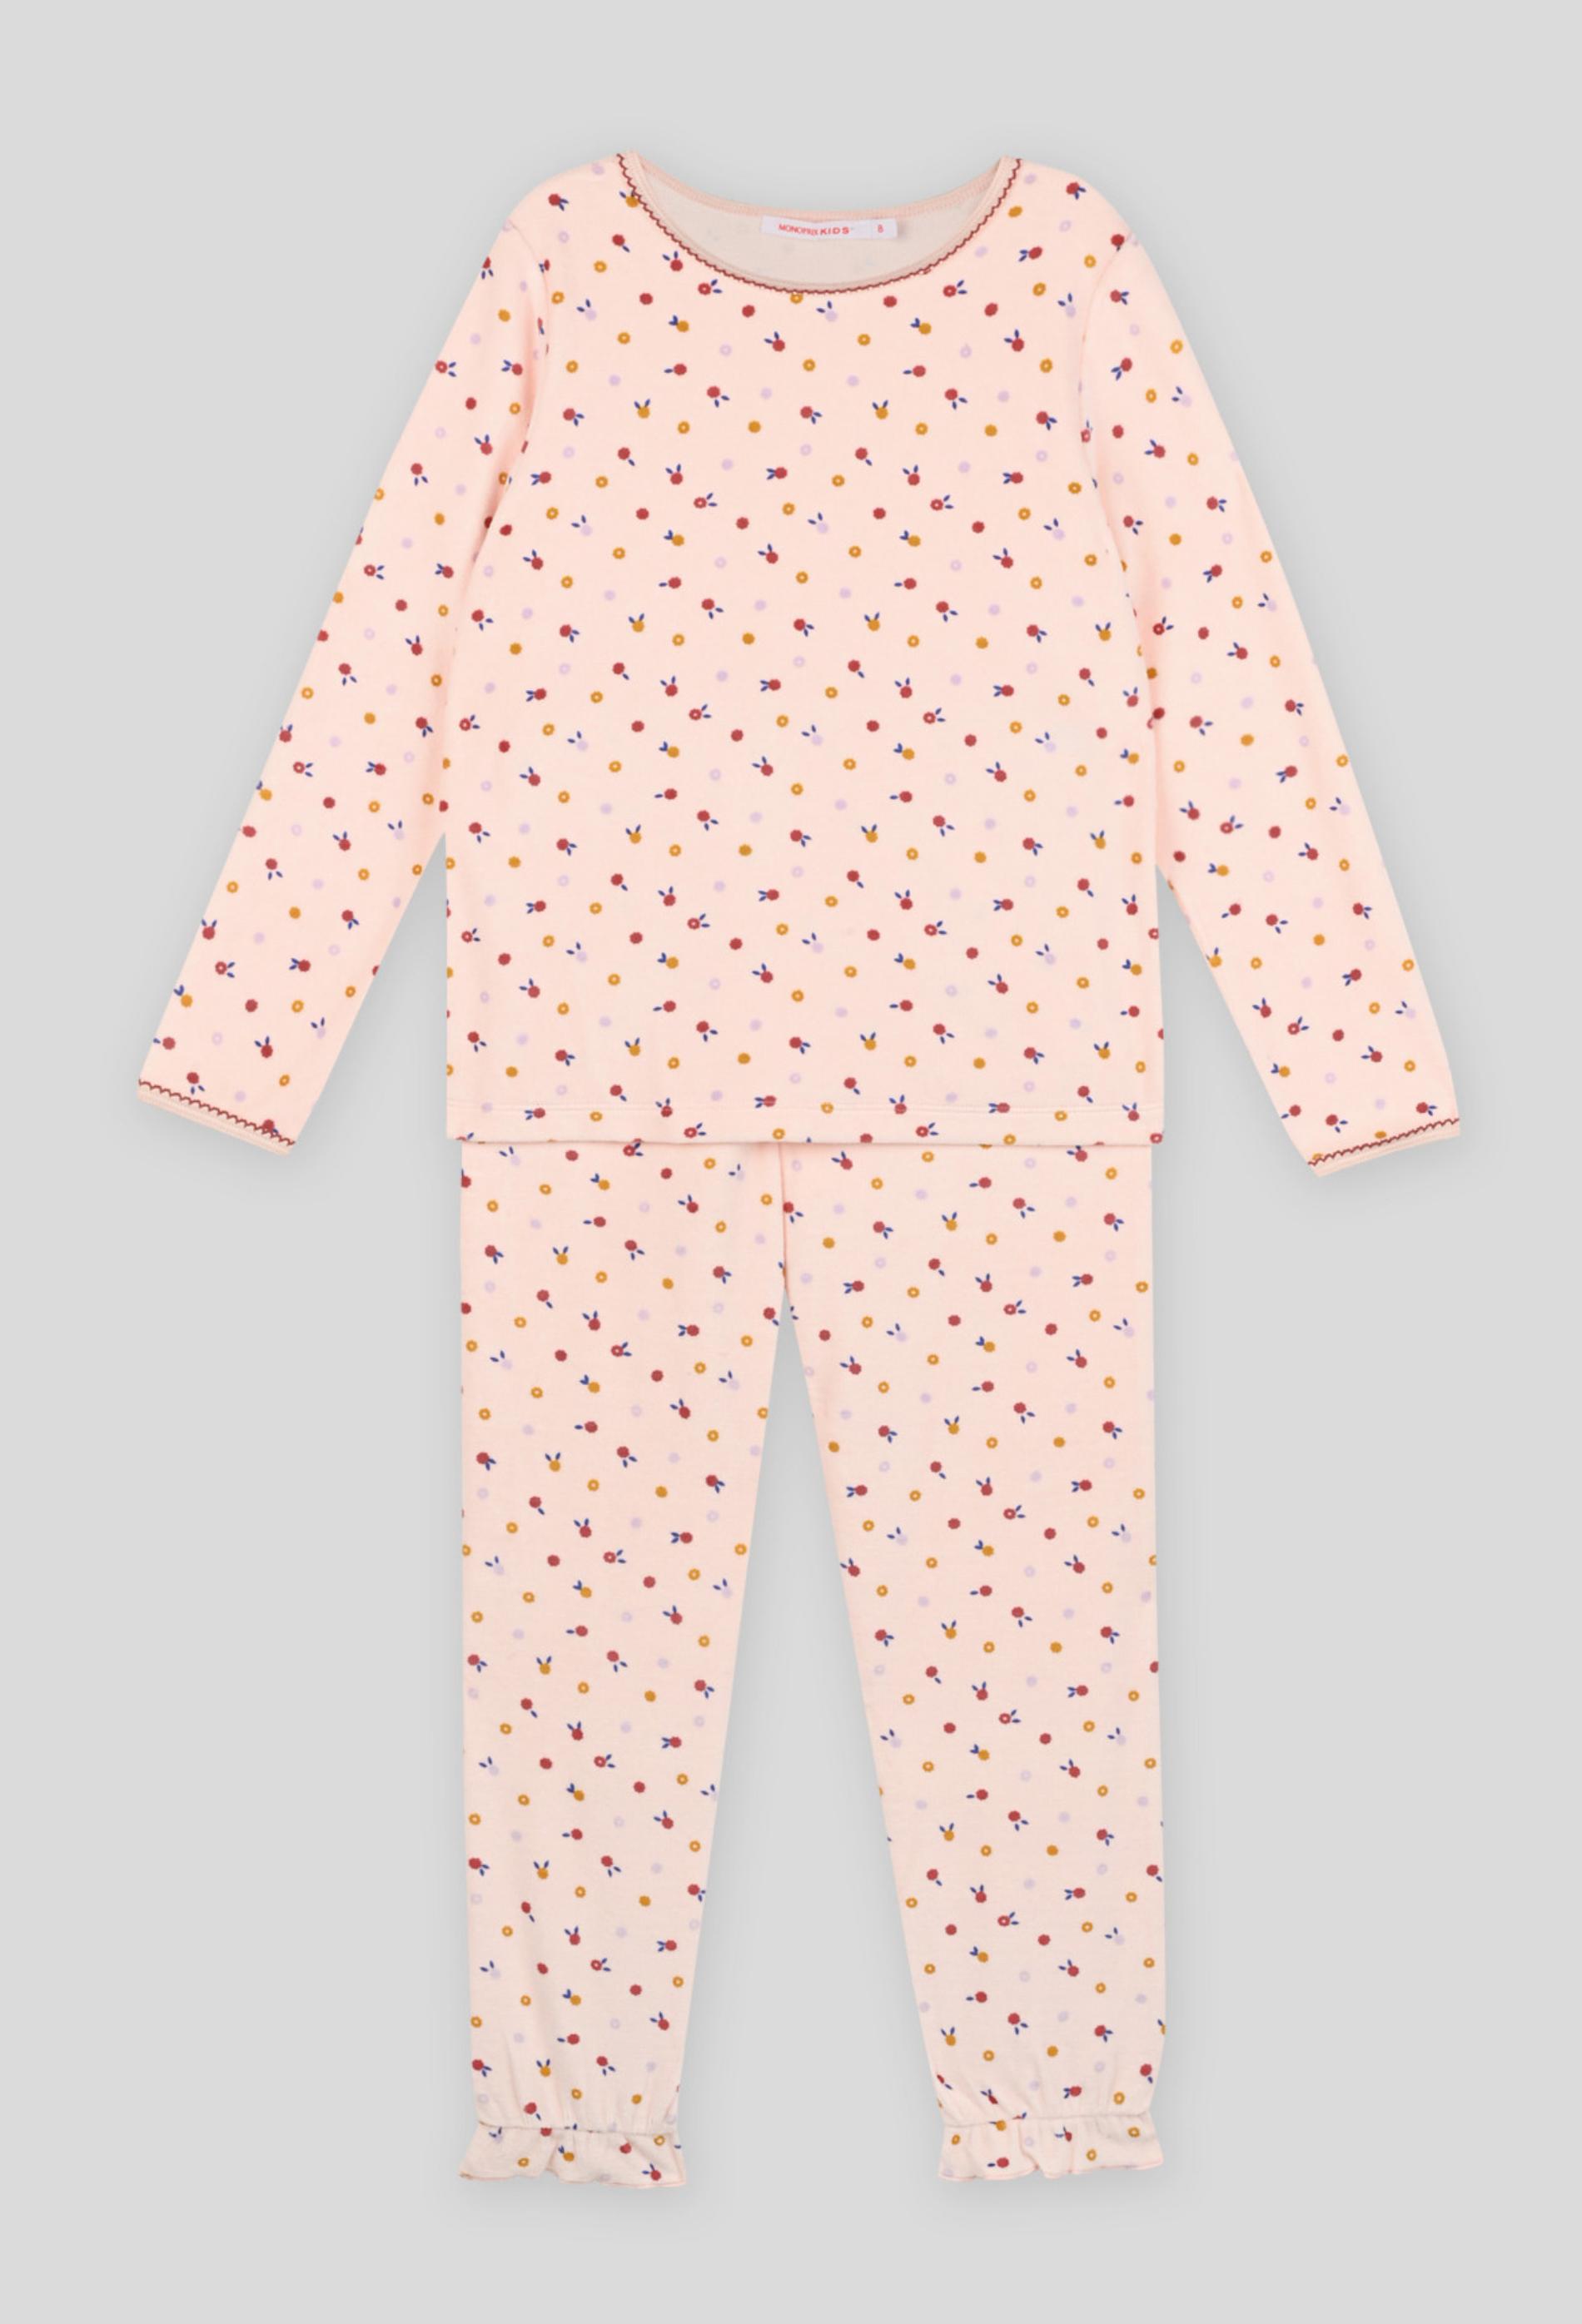 Pyjama long imprimé petites fleurs en velours, BIO 3 ans rose clair